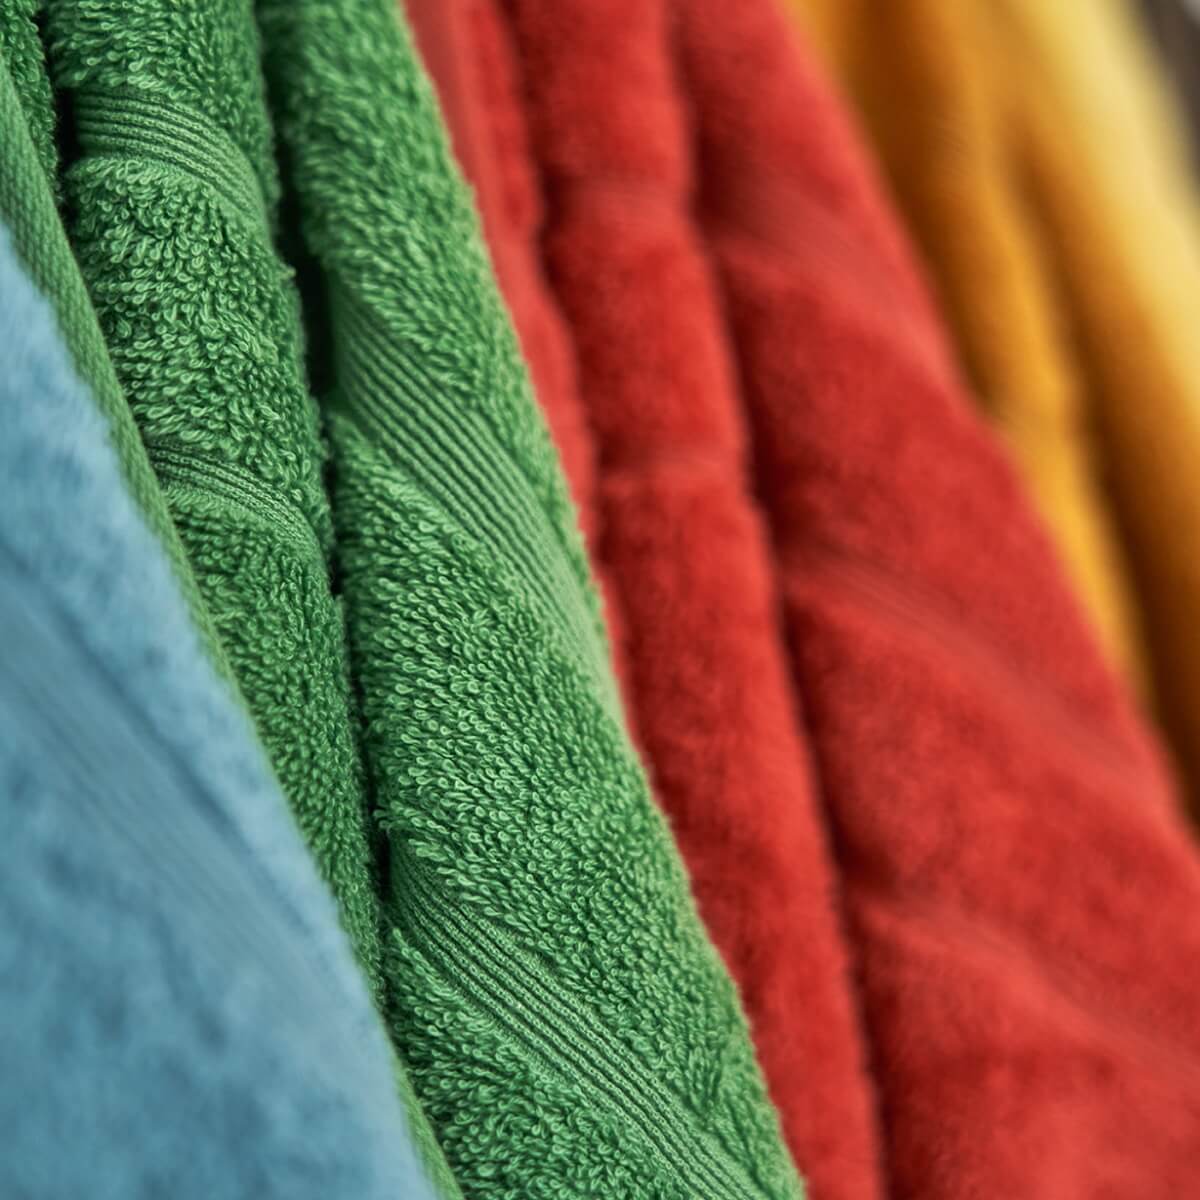 Fire håndklæder hængende på række. Farverne på håndklæderne er havblå, grøn, rød og orange. Teksturen er blød.